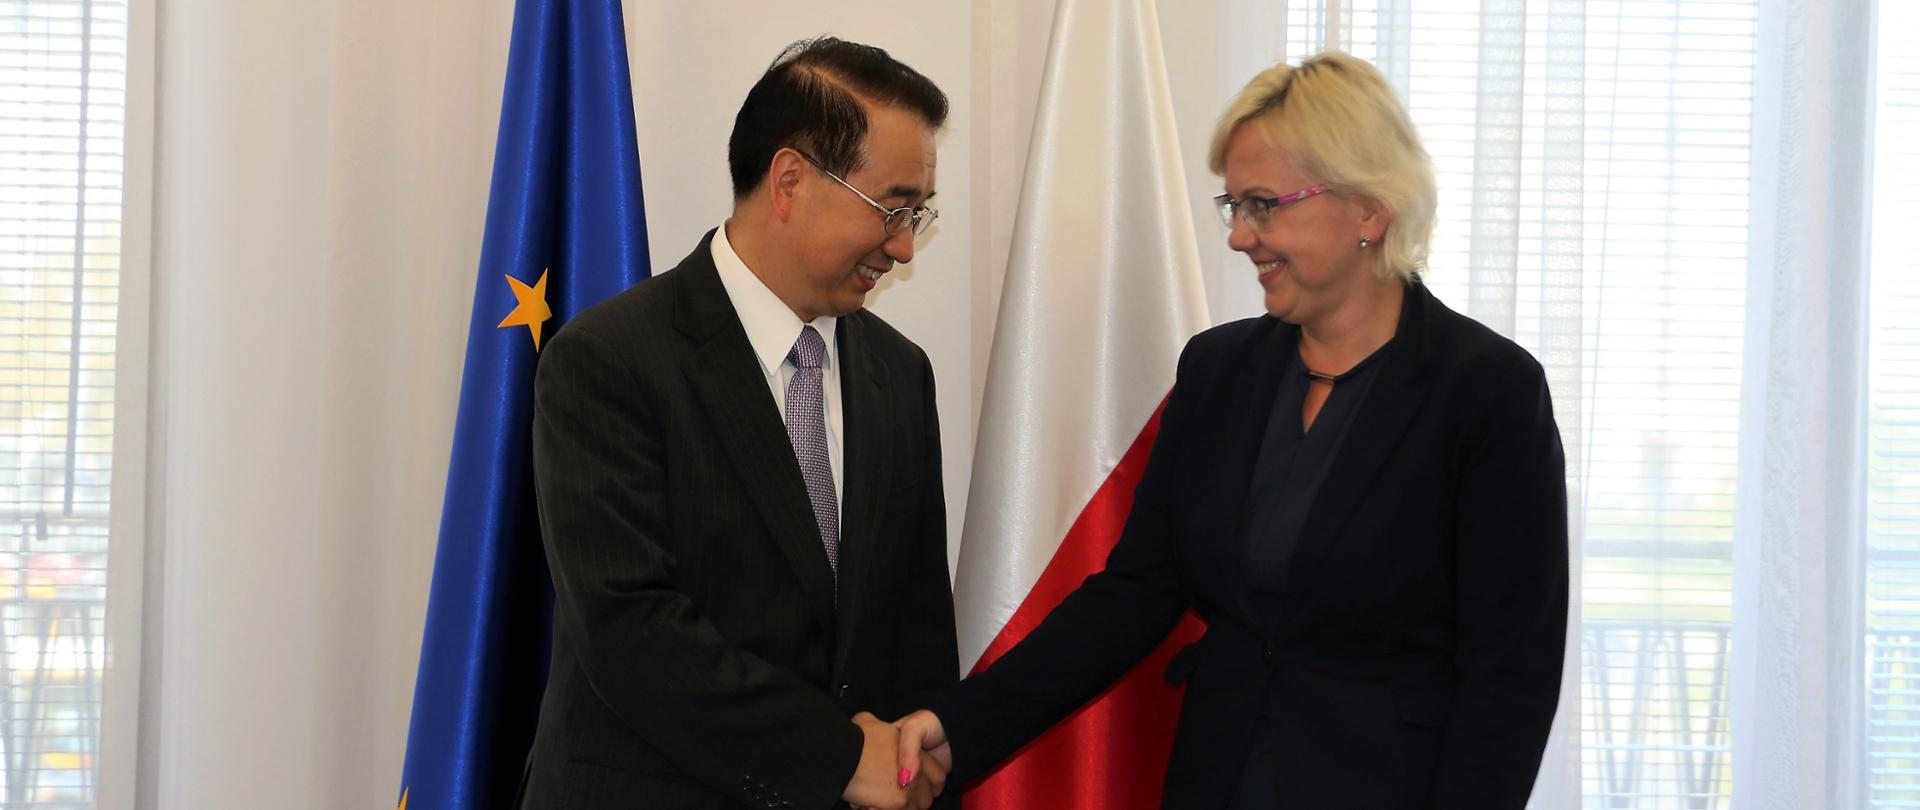 Minister Moskwa wita się z Ambasadorem Chin w Polsce